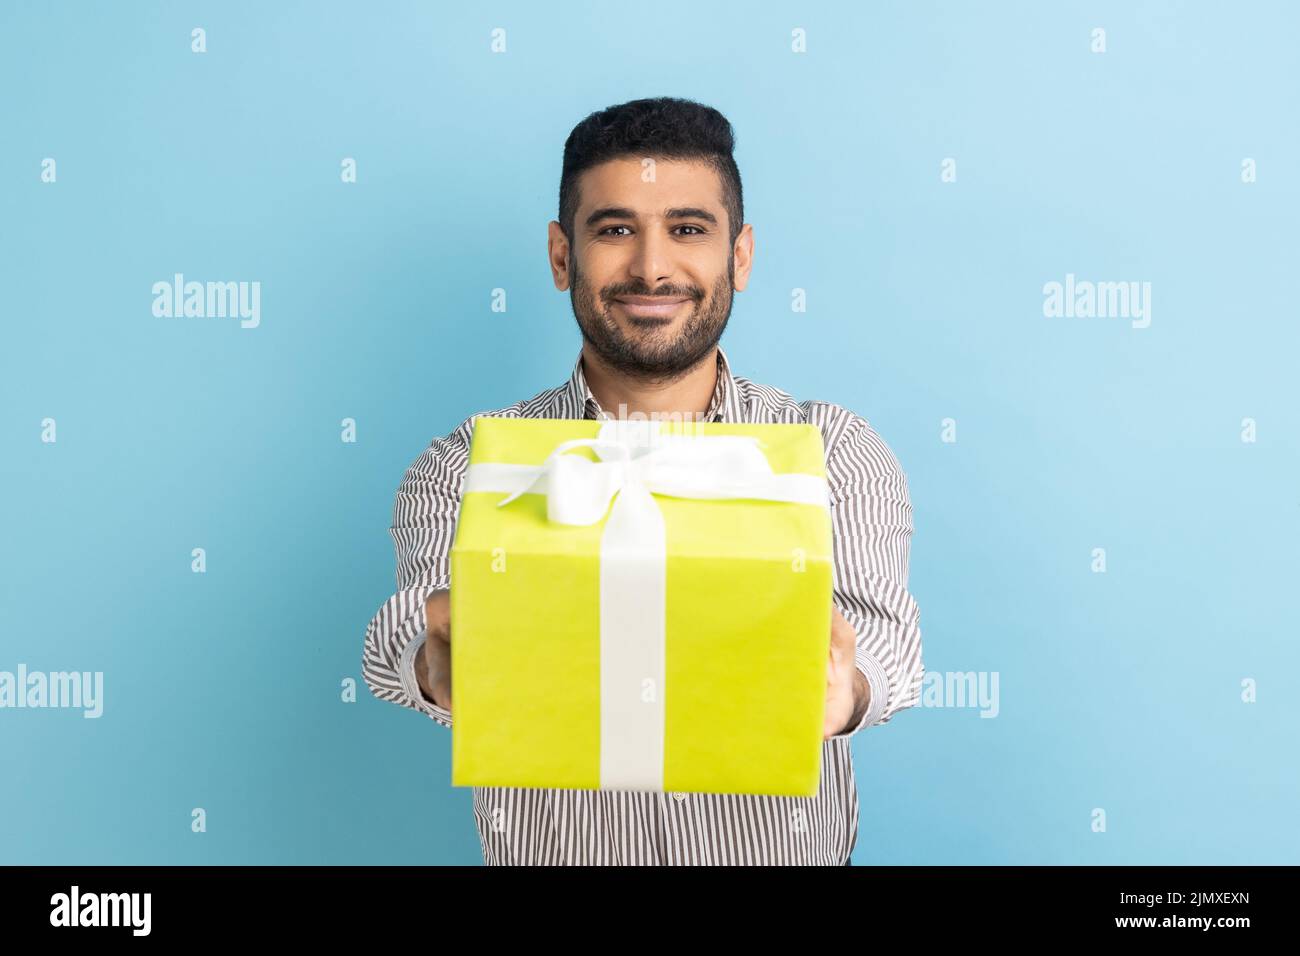 Retrato de un hombre de negocios barbudo sonriente con caja de regalo amarilla envuelta y sonriendo con cámara fotográfica, feliz día de fiesta, usando camisa a rayas. Estudio de interior aislado sobre fondo azul. Foto de stock